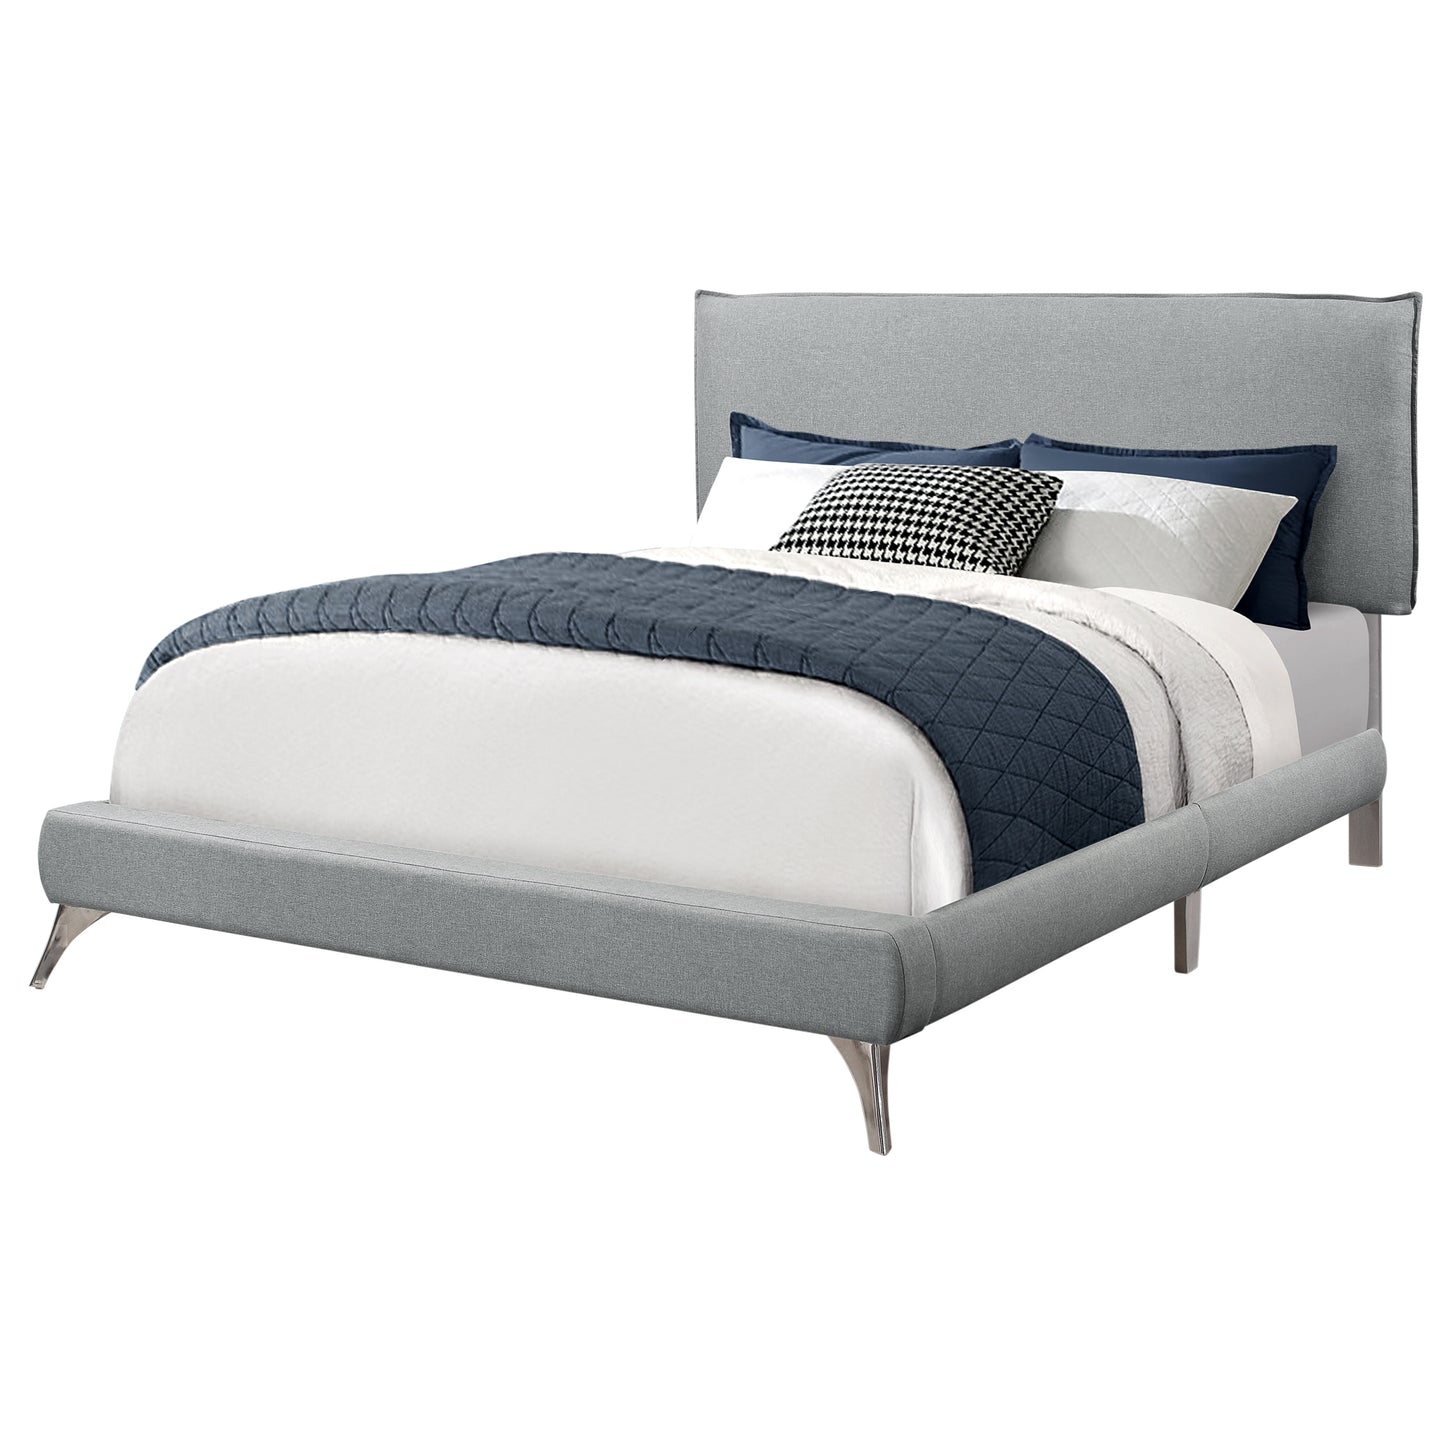 70.25" X 87.25" X 47.25" Grey Foam Solid Wood Linen Queen Size Bed